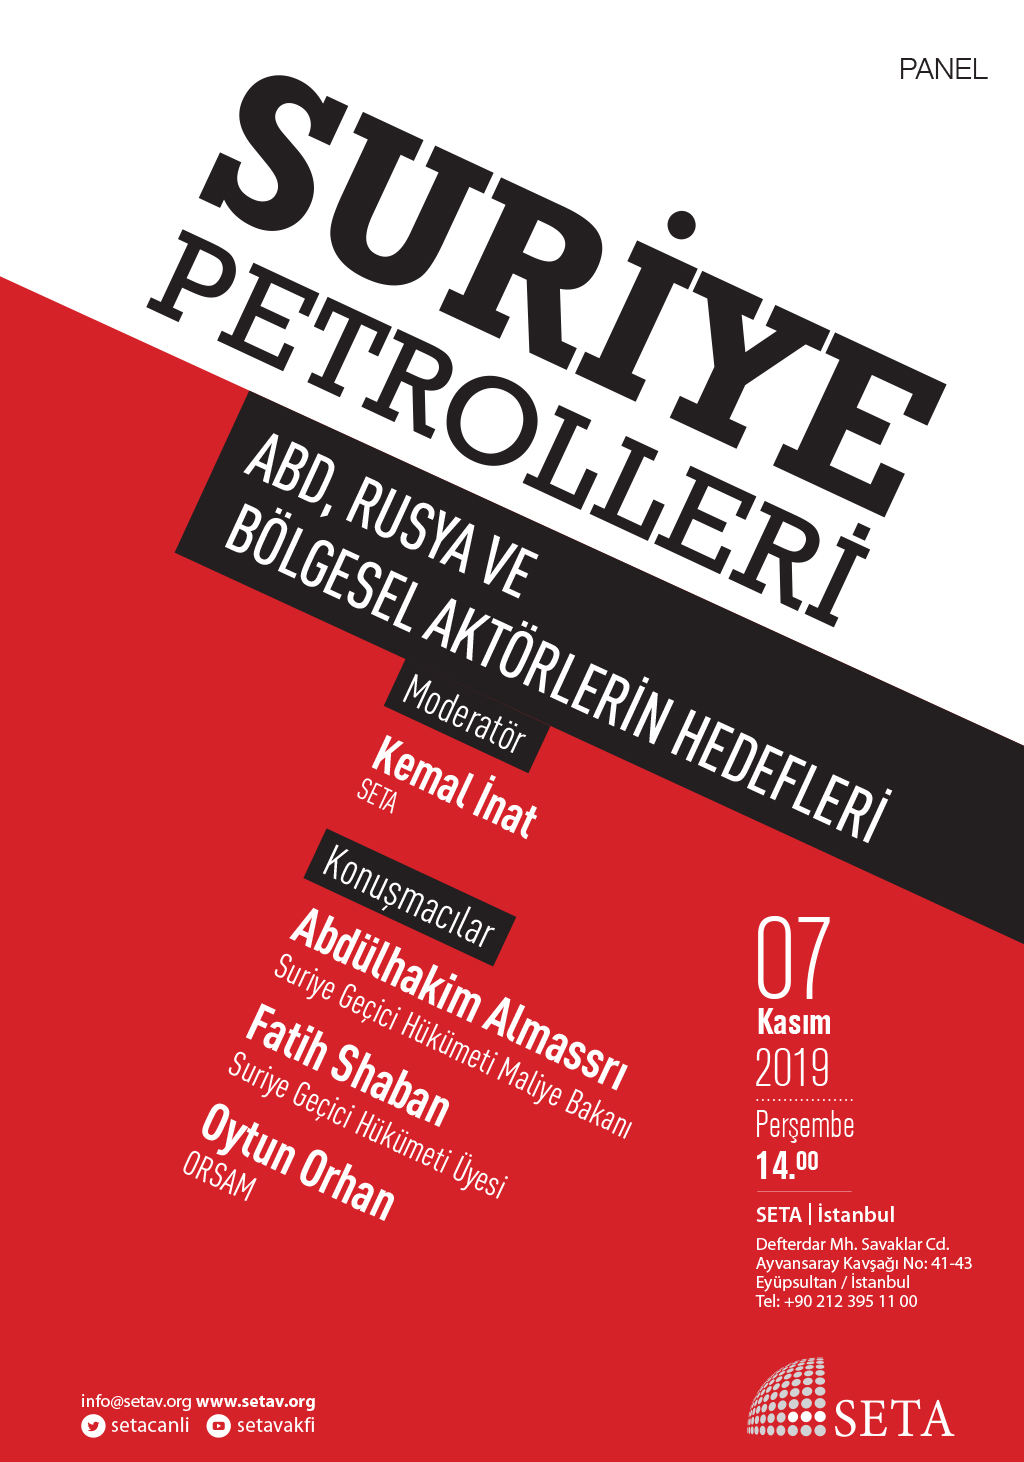 Panel Suriye Petrolleri ABD Rusya ve Bölgesel Aktörlerin Hedefleri